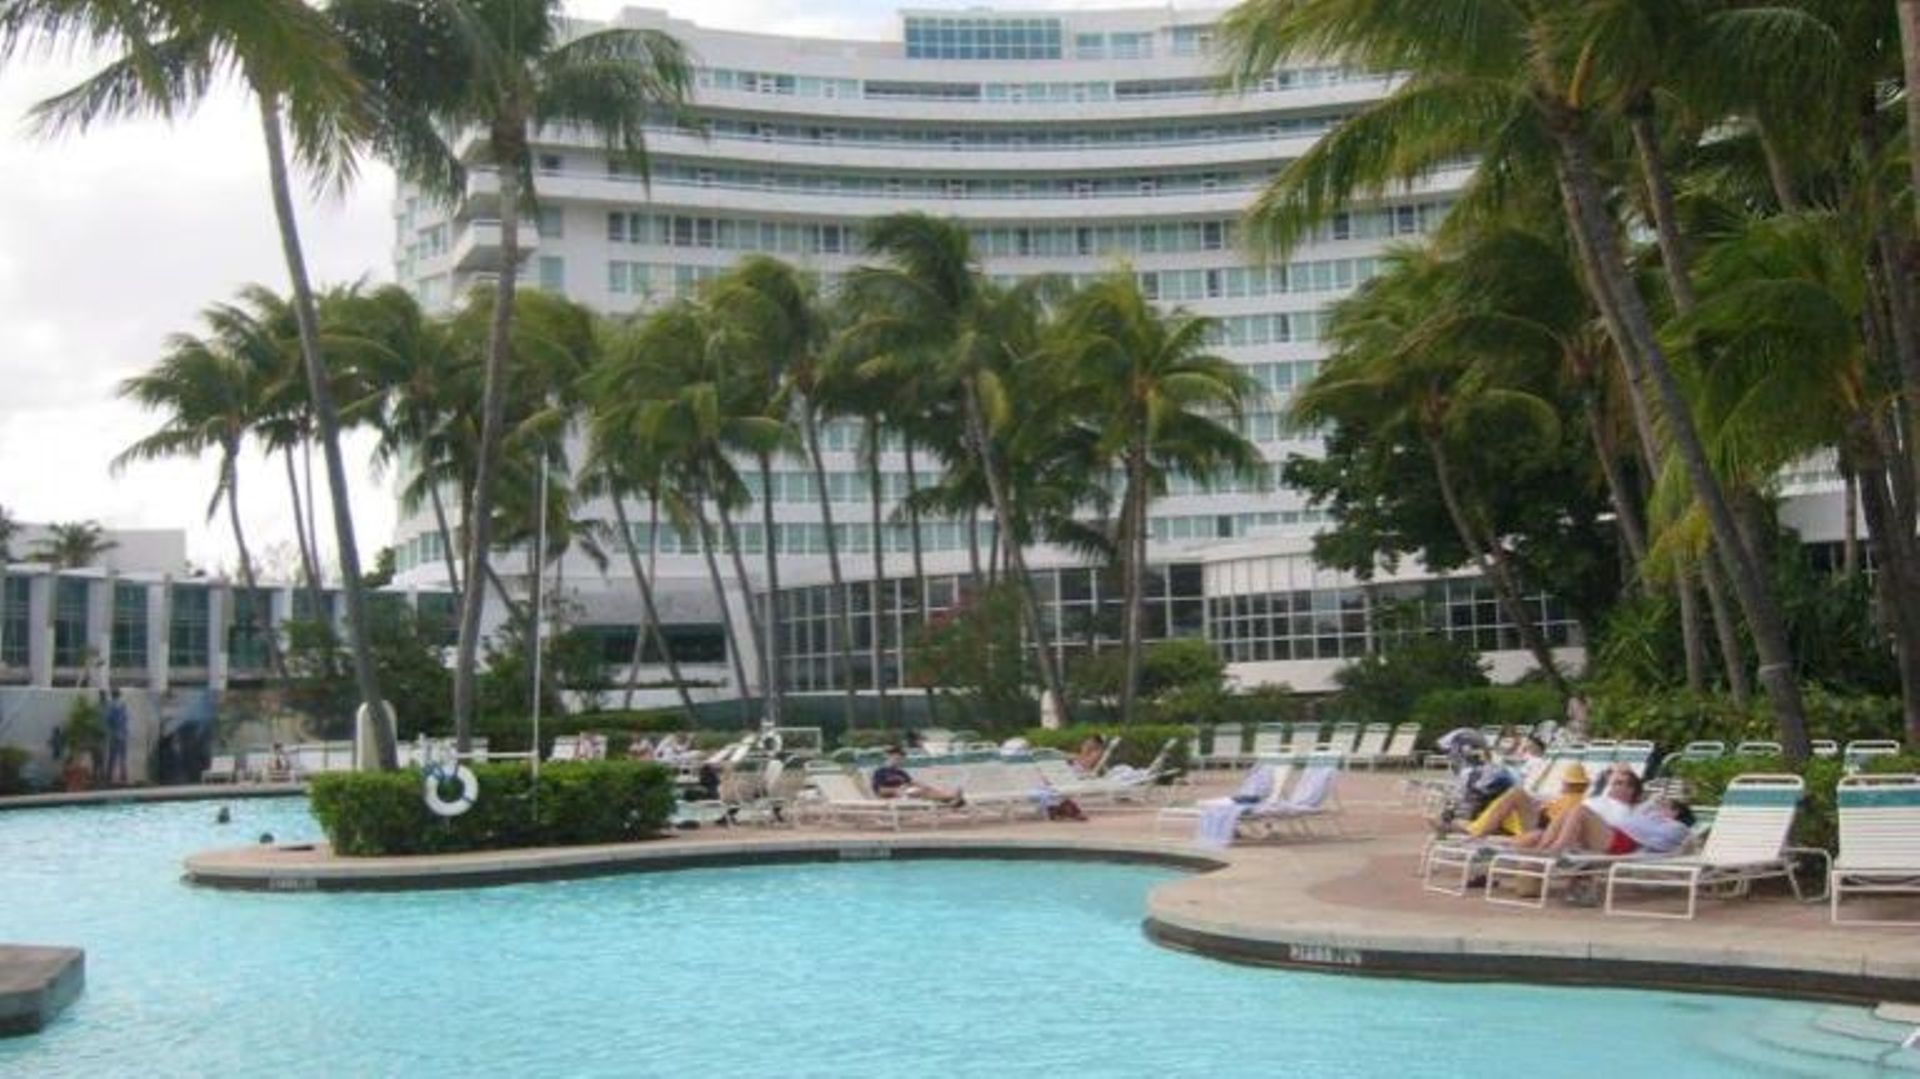 L’hôtel Miami Beach en Floride qui a servi de décor aux films "Scarface" et Goldfinger